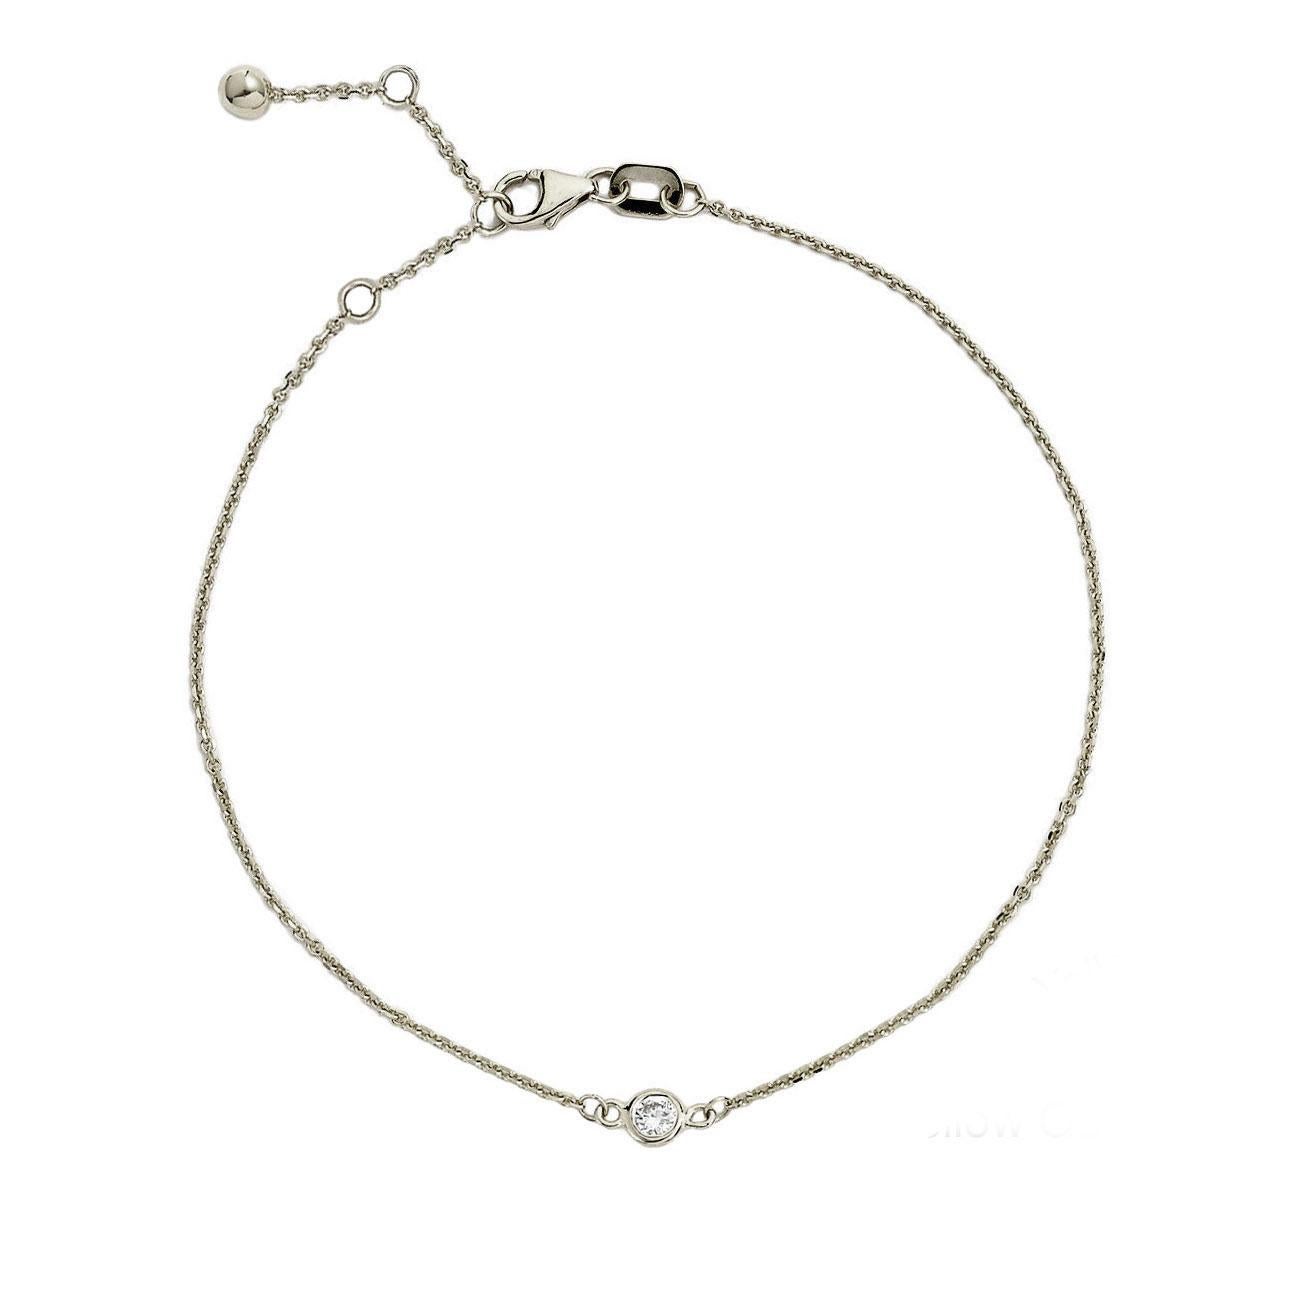 Contemporary Suzy Levian 14K White Gold 0.15 Carat White Diamond Solitaire Bracelet For Sale